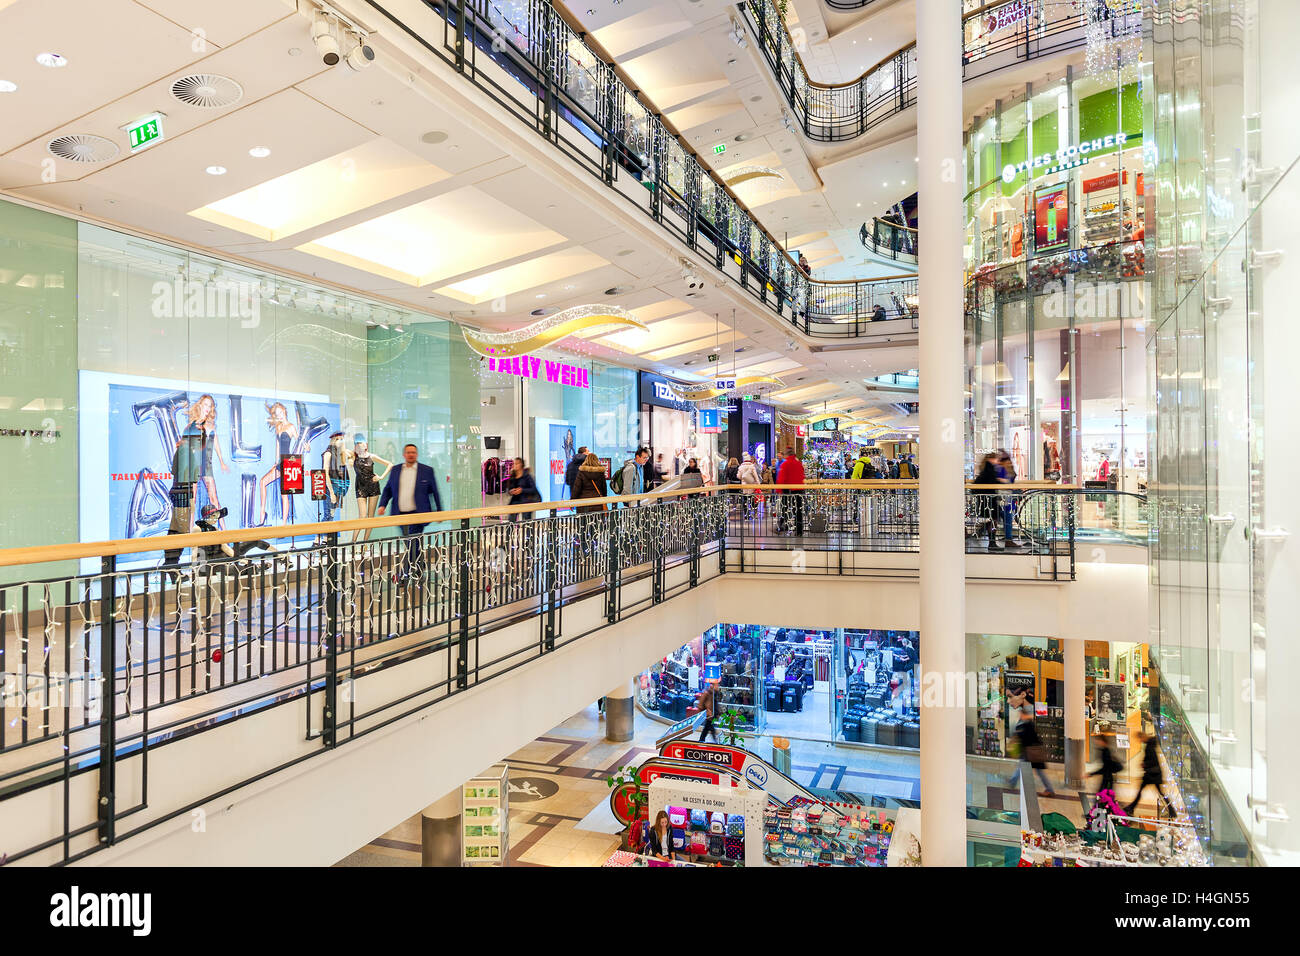 Innenansicht des Einkaufszentrum Palladium dekoriert für Weihnachtsferien in Prag, Tschechien. Stockfoto